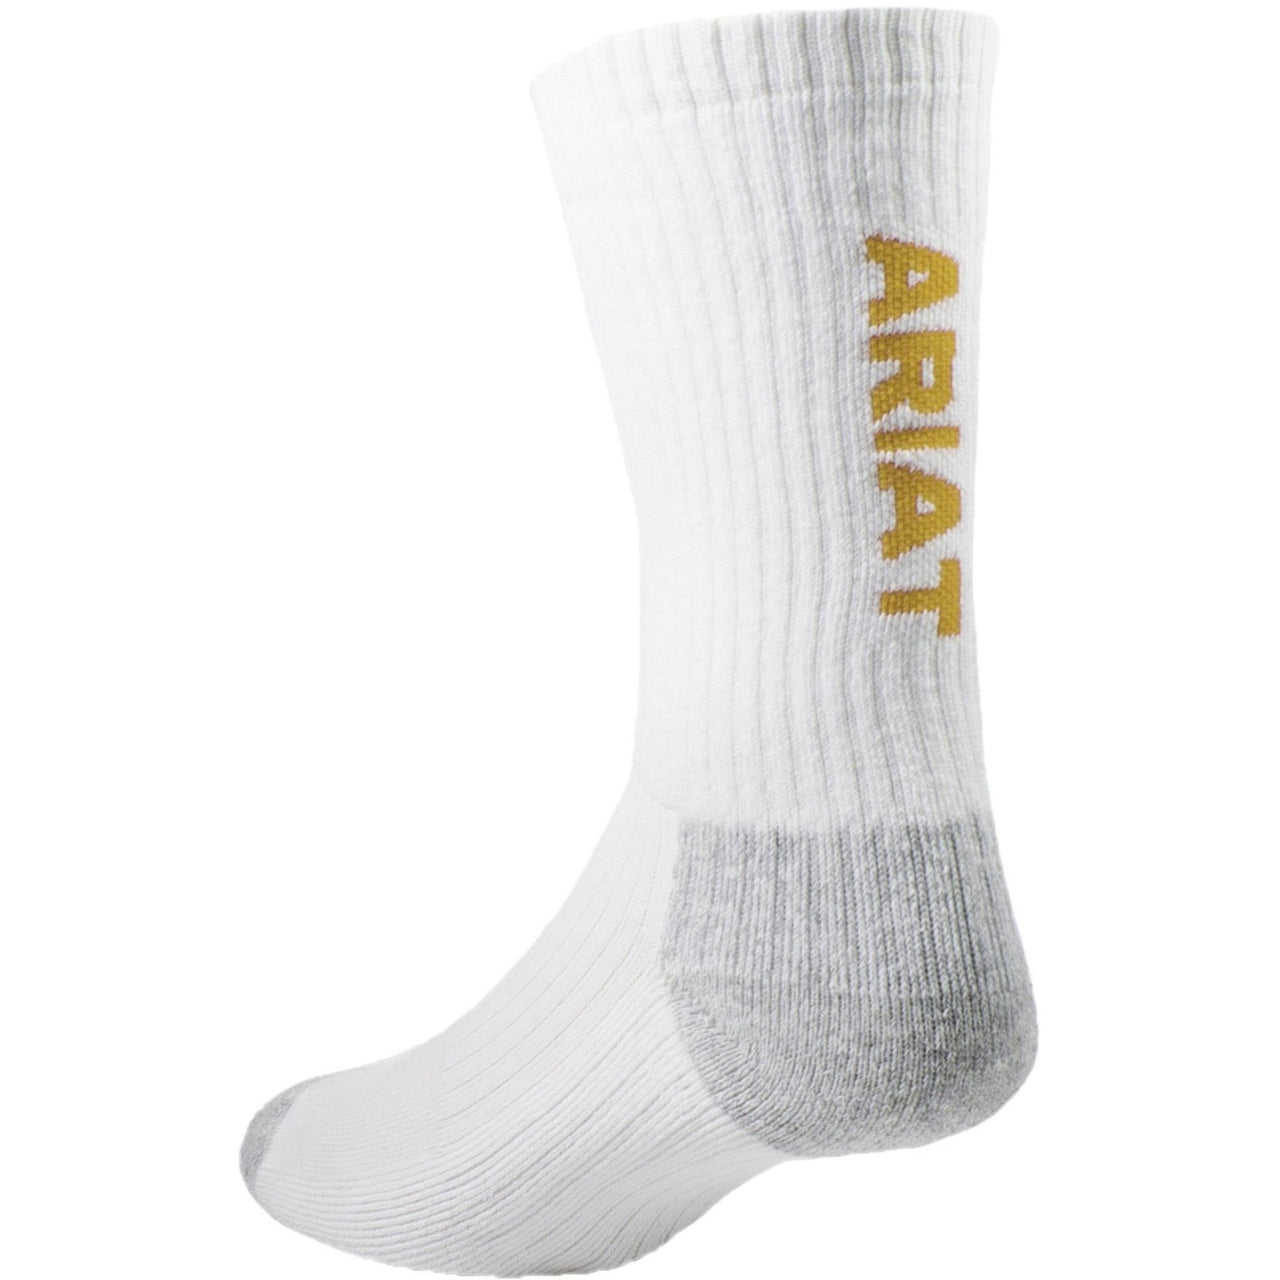 Ariat Premium Ringspun Cotton Crew Socks - 3pk